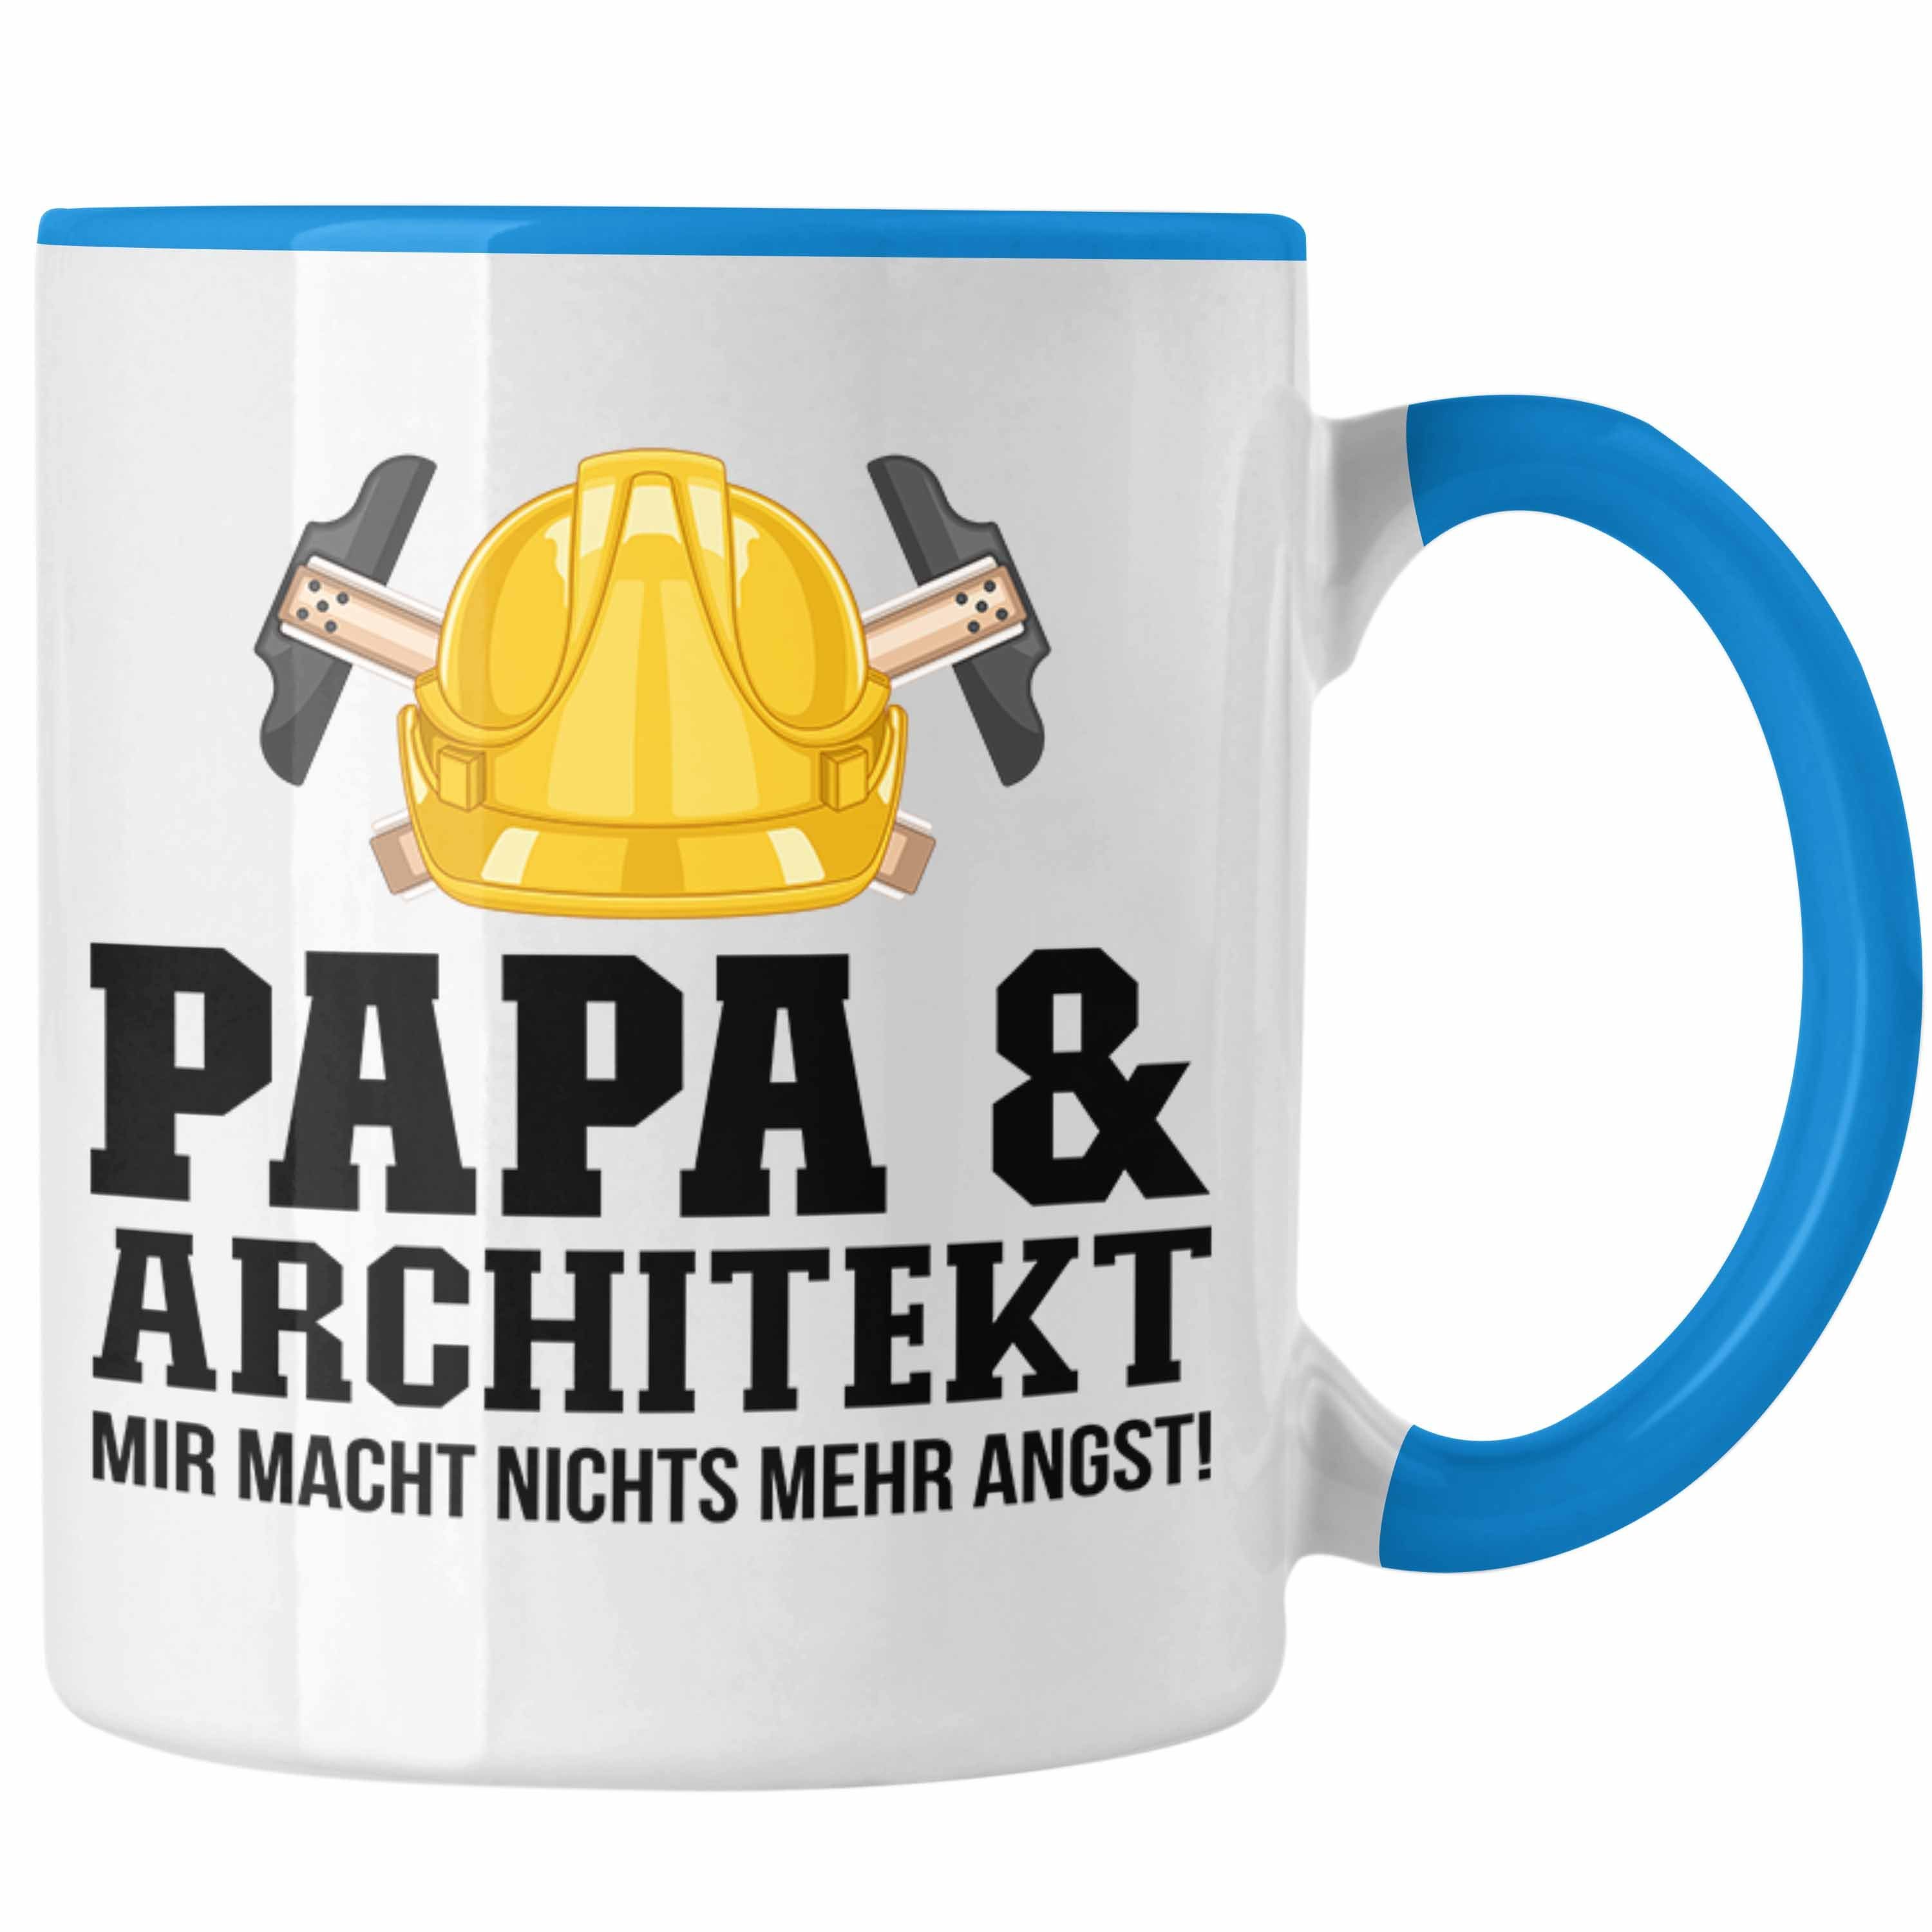 Trendation Geschenkidee Tasse Blau Papa Trendation Tasse und Vater - Architekt für Architekt